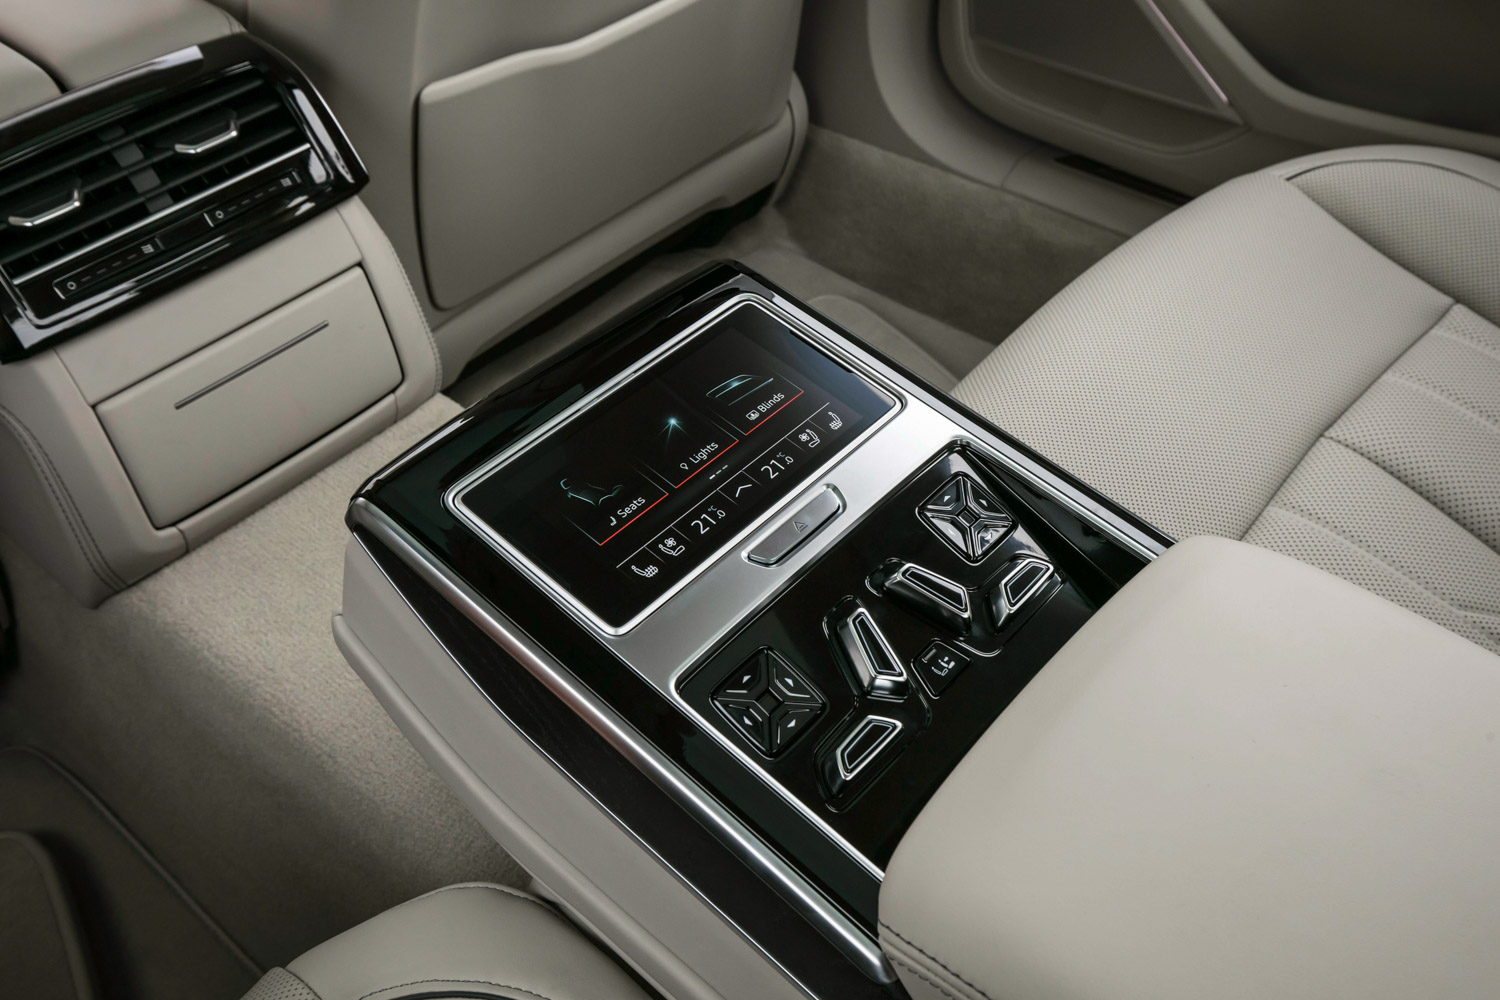 Audi A8 科技旗艦運用全新的Audi Virtual Cockpit全數位虛擬座艙科技，捨棄傳統按鍵與旋鈕設計，首度搭配採用新世代MMI直覺式觸碰控制系統，駕駛者只需以手指點觸按壓或口語指令即可輕鬆操作多媒體影音資訊系統、空調與座椅調整等多項功能。